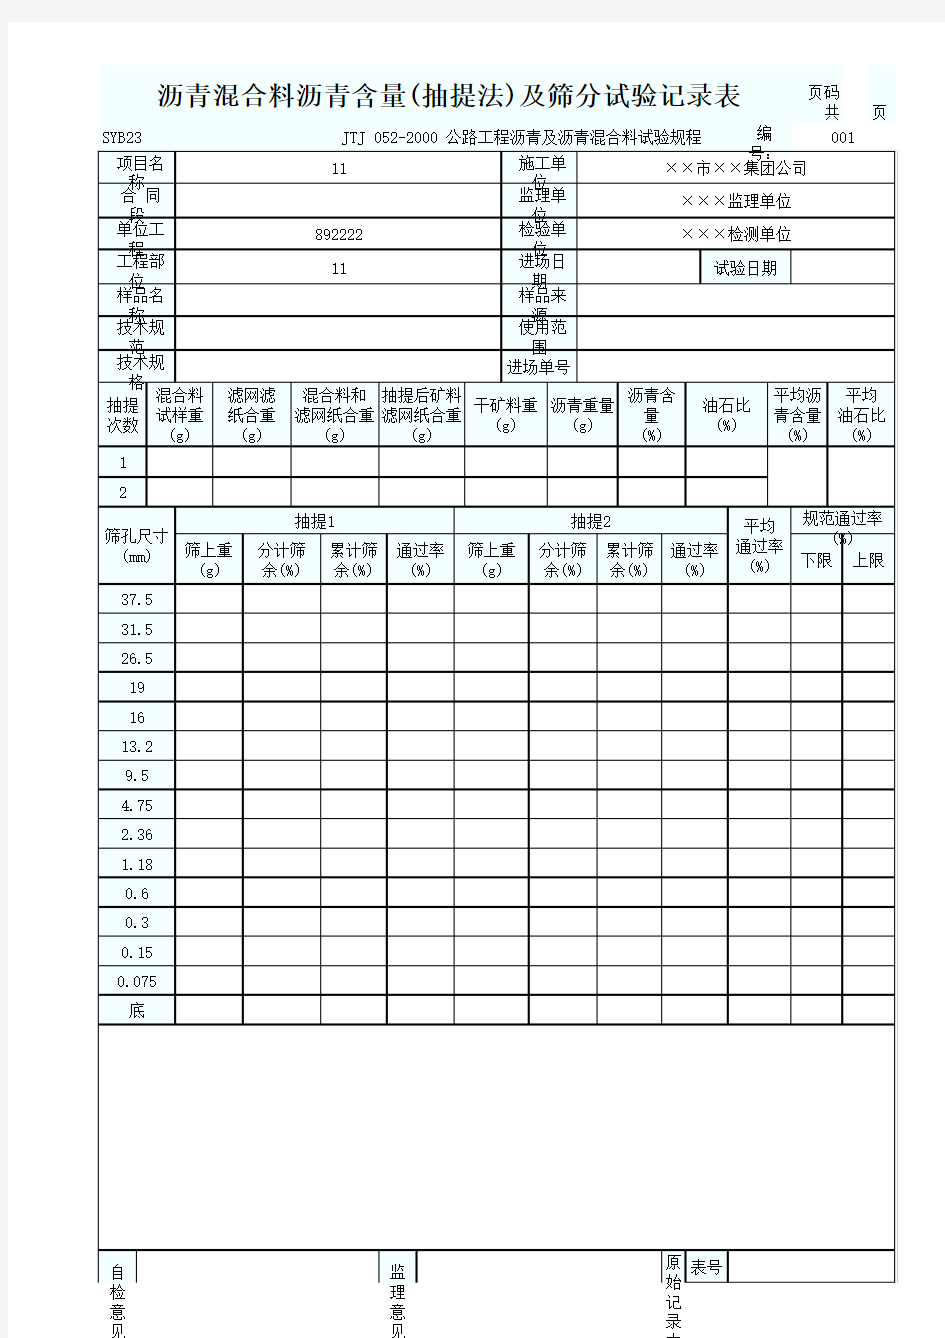 沥青混合料沥青含量(抽提法)及筛分试验记录表